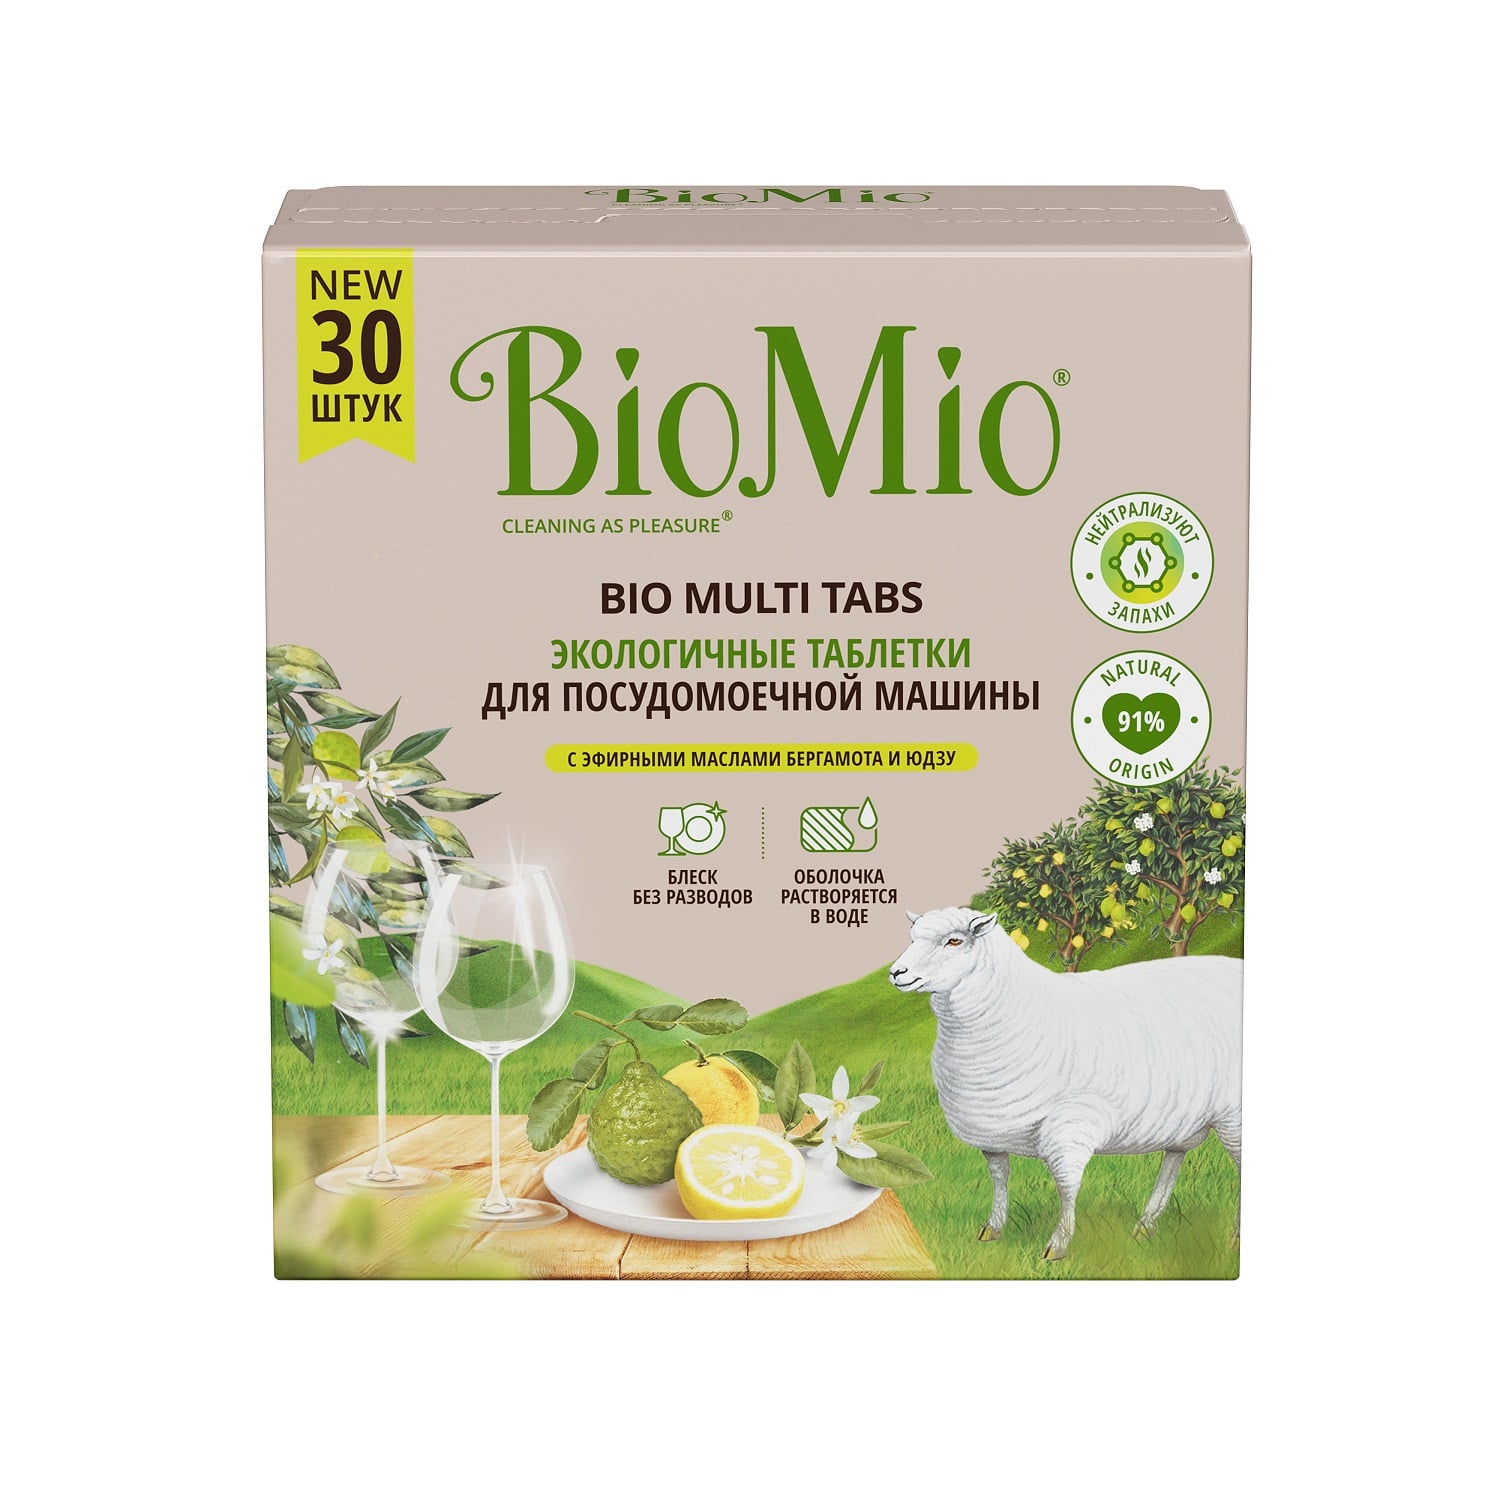 BioMio Таблетки для посудомоечной машины Bio Multi Tabs с эфирными маслами бергамота и юдзу, 30 шт (BioMio, Посуда) biomio набор средств для посудомоечной машины biomio посуда